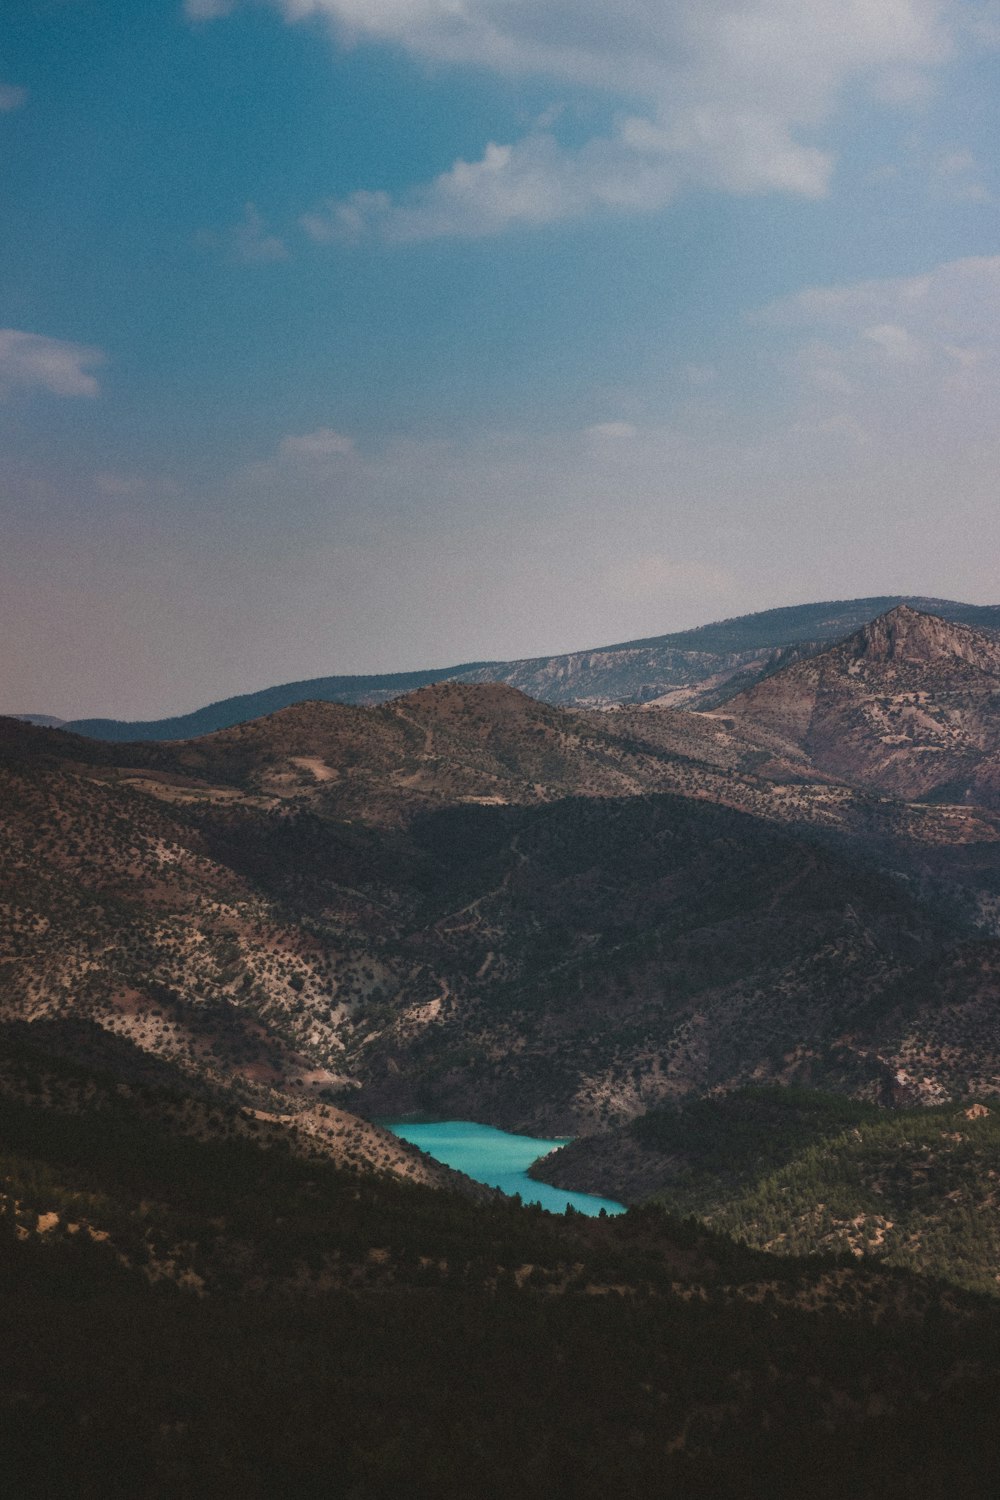 Una vista de un lago en medio de una cadena montañosa